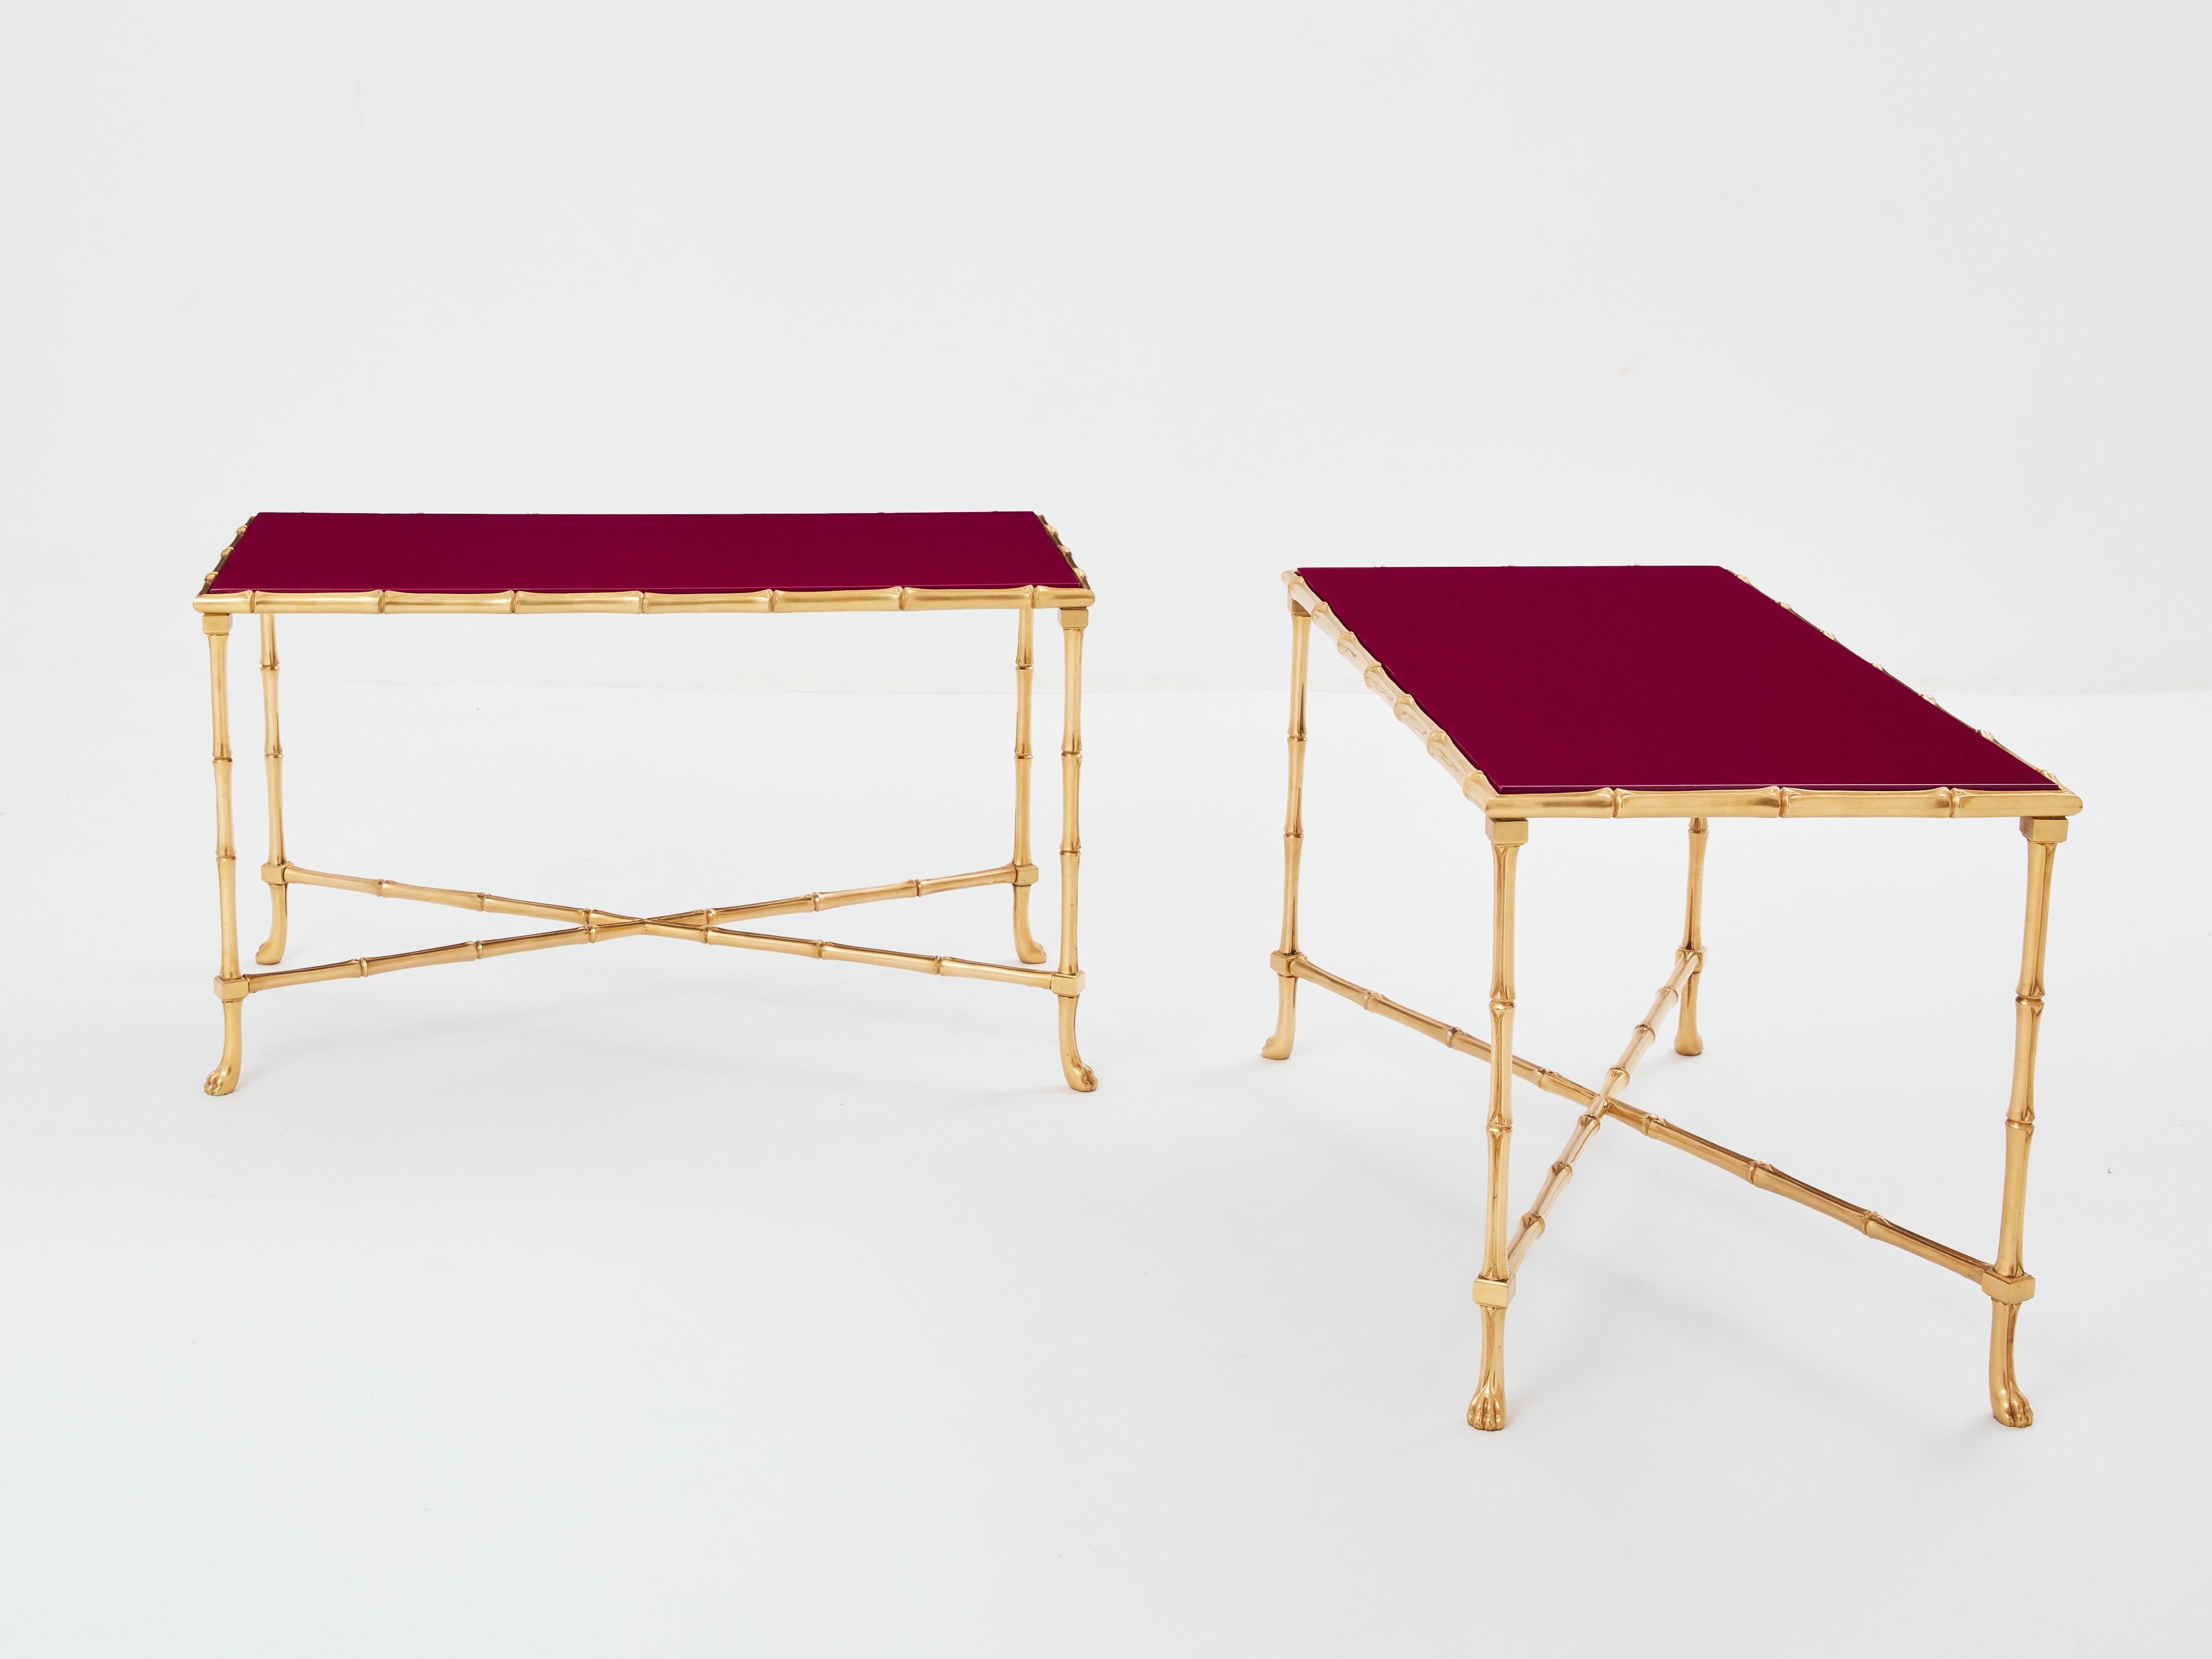 Cette magnifique paire de tables d'appoint de la Maison Baguès a été créée avec du laiton massif en forme de bambou et de magnifiques plateaux en laque rouge framboise au début des années 1960. Les plateaux laqués sont intemporels et lisses, tandis